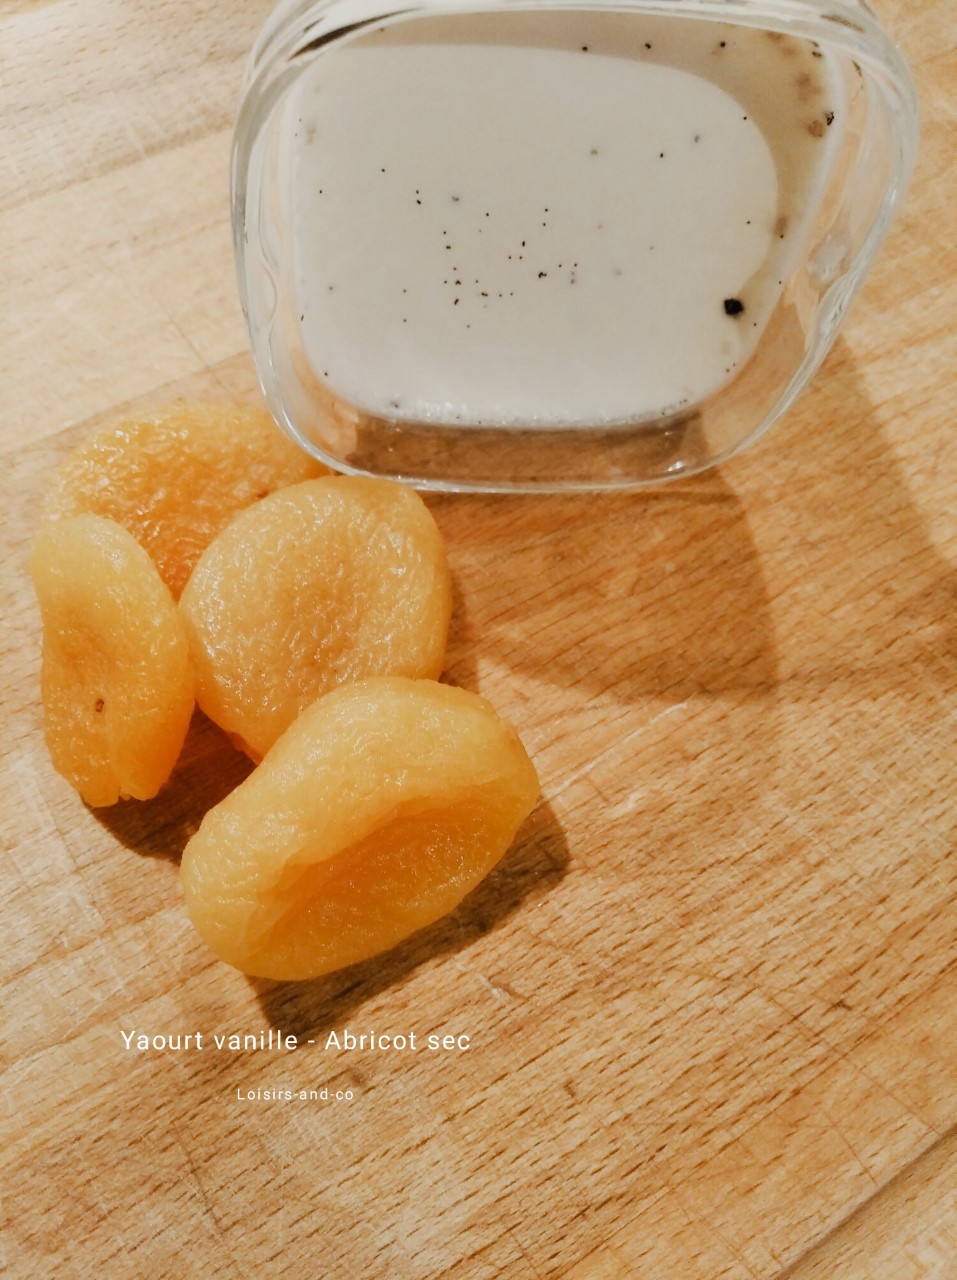 Yaourt vanille - Abricot sec